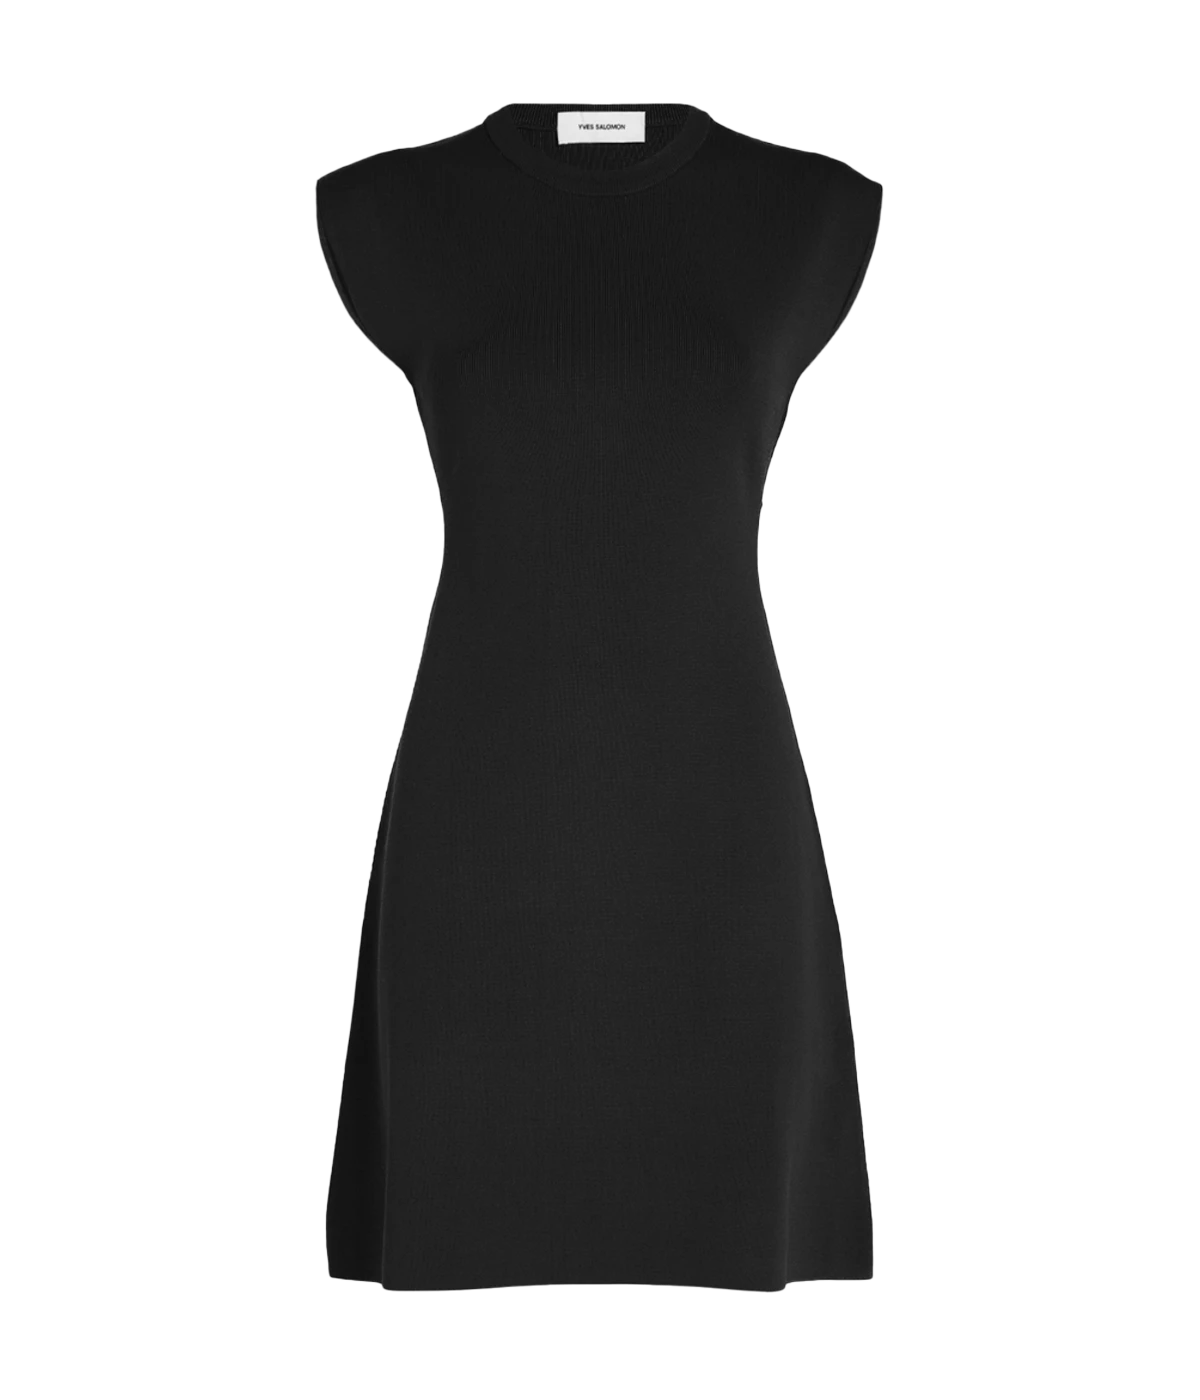 Knitwear Stretch Dress in Black